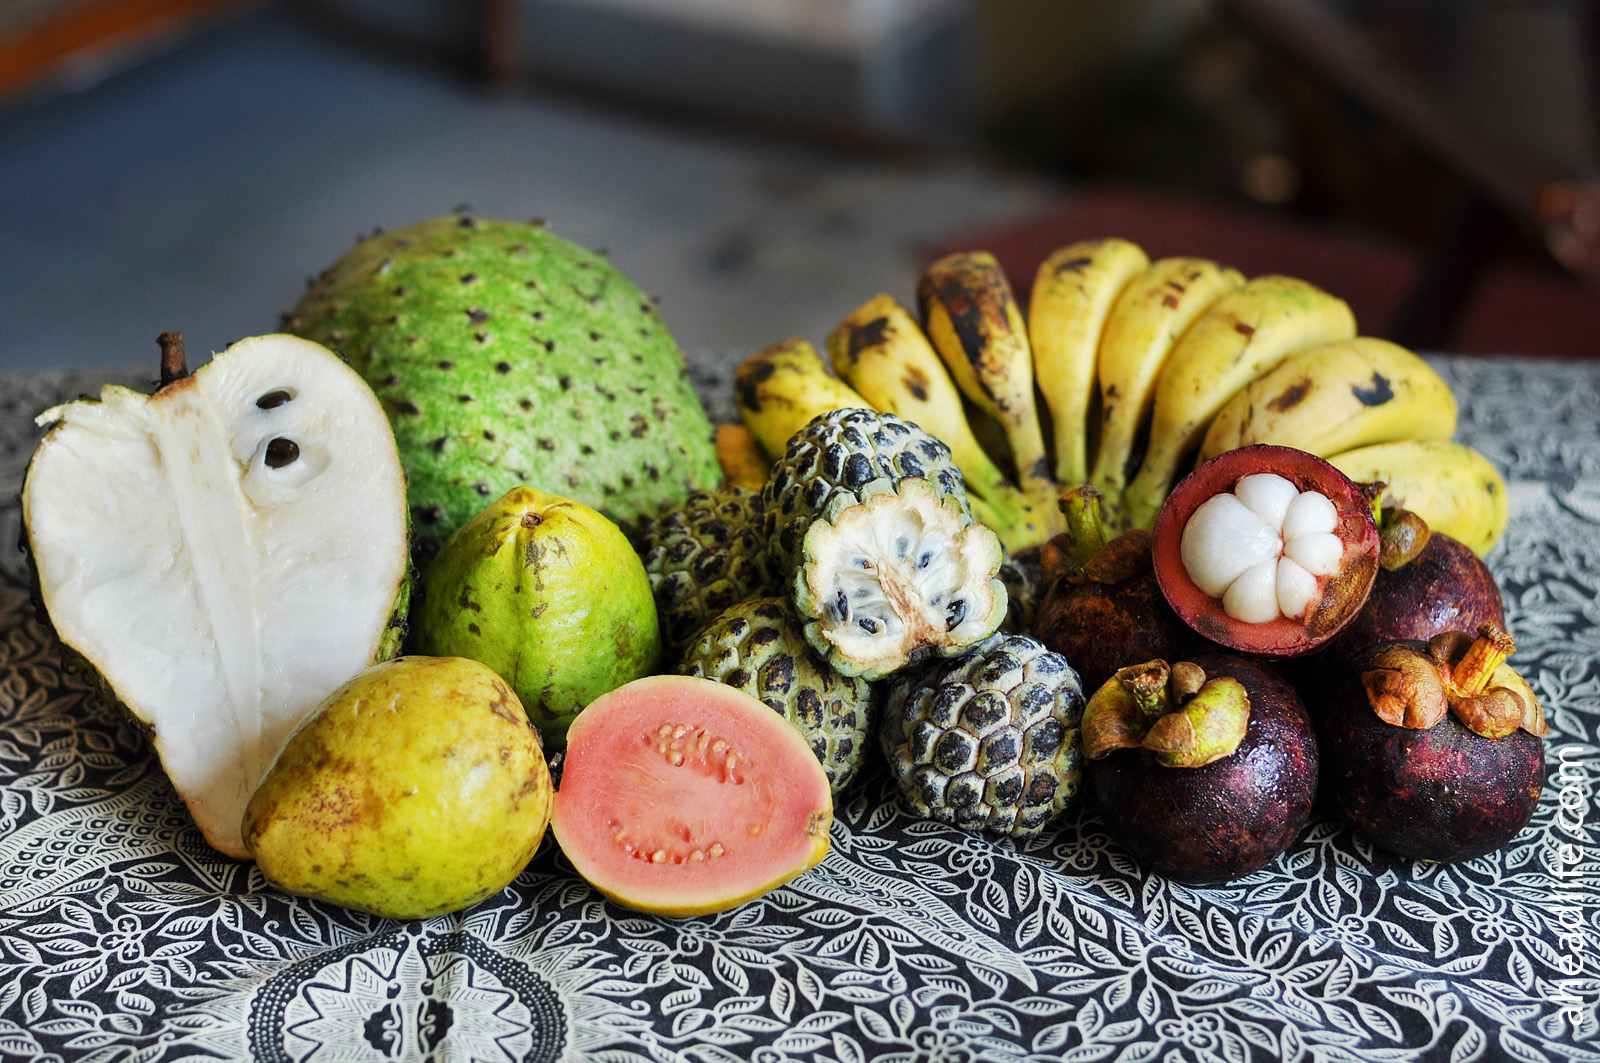 Фото фруктов и их названия. Фрукты Тайланда. Тропические фрукты Тайланда. Папайя рамбутан маракуйя. Экзотические фрукты Тайланда папайя.